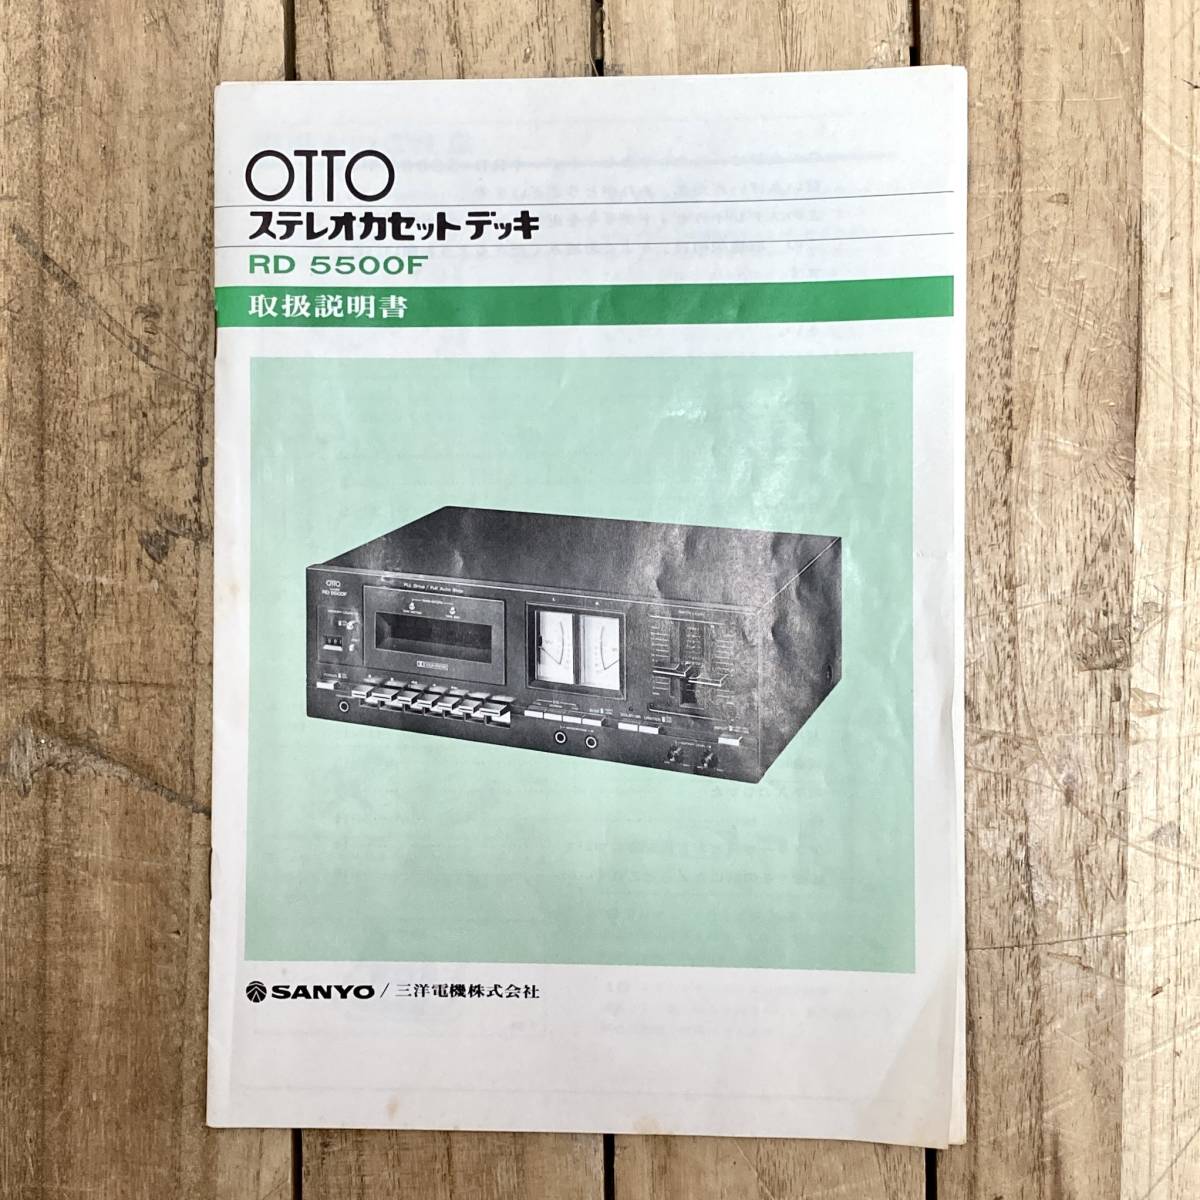 ▽SANYO OTTO RD 5500F ステレオ カセットデッキ ブラック 黒